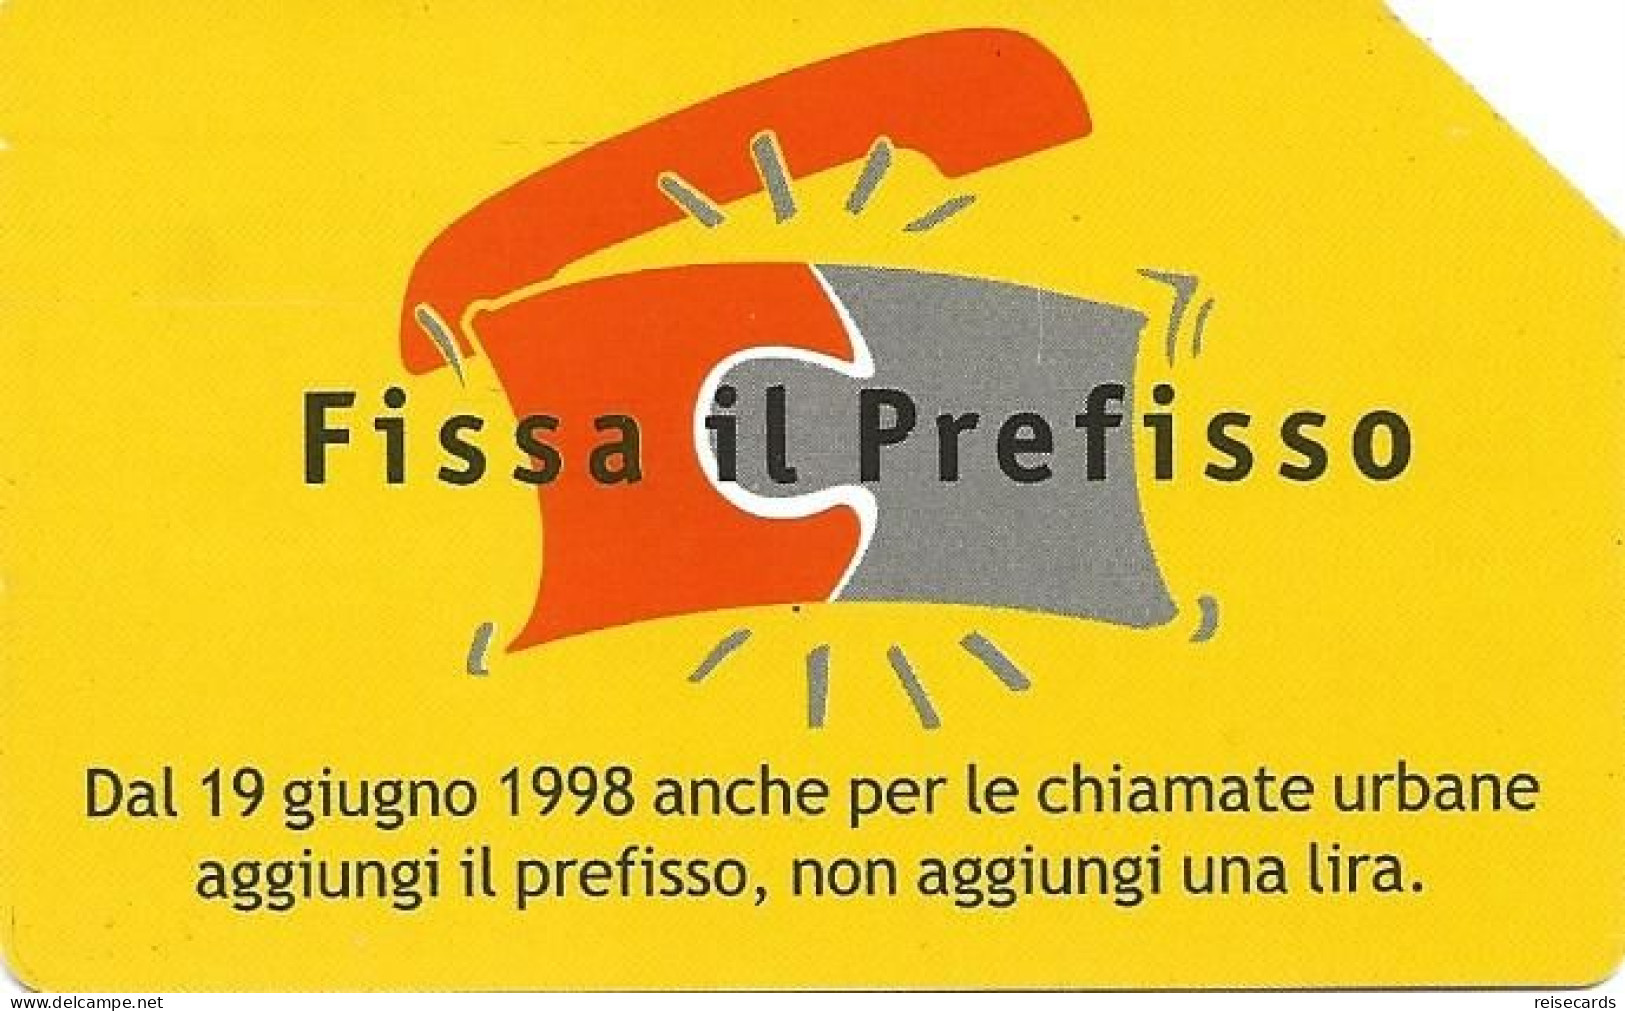 Italy: Telecom Italia - Fissa Il Prefisso - Public Advertising